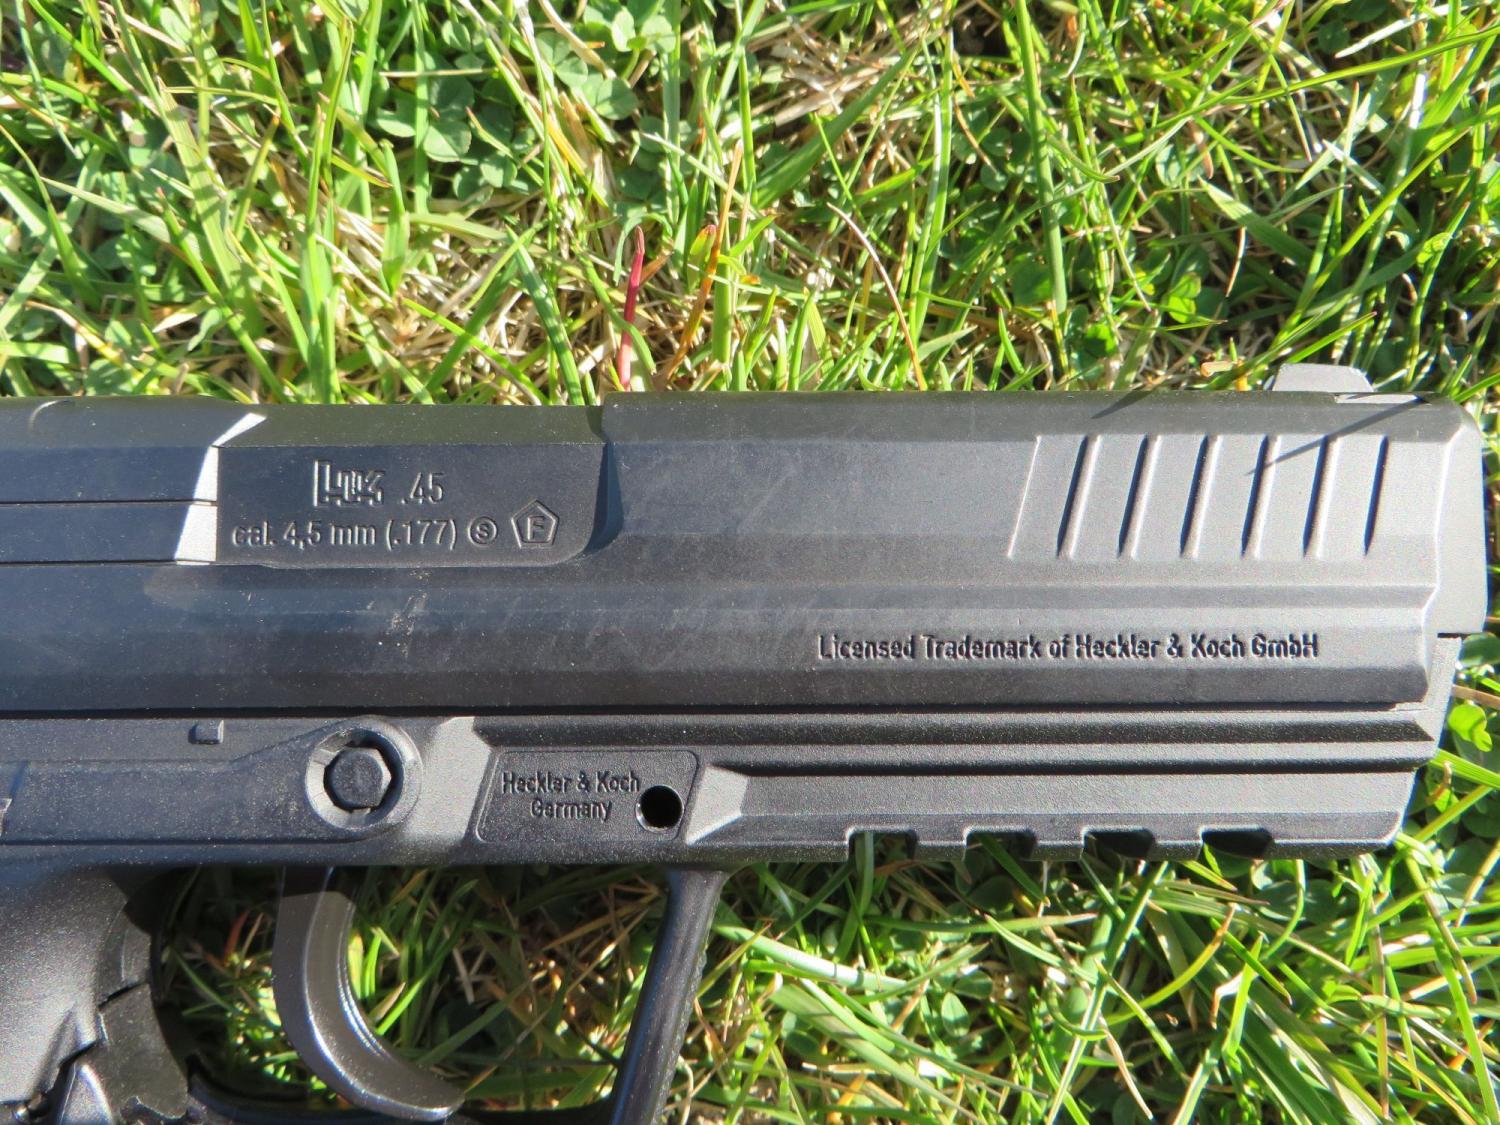 Wiatrówka - Pistolet Heckler & Koch HK45